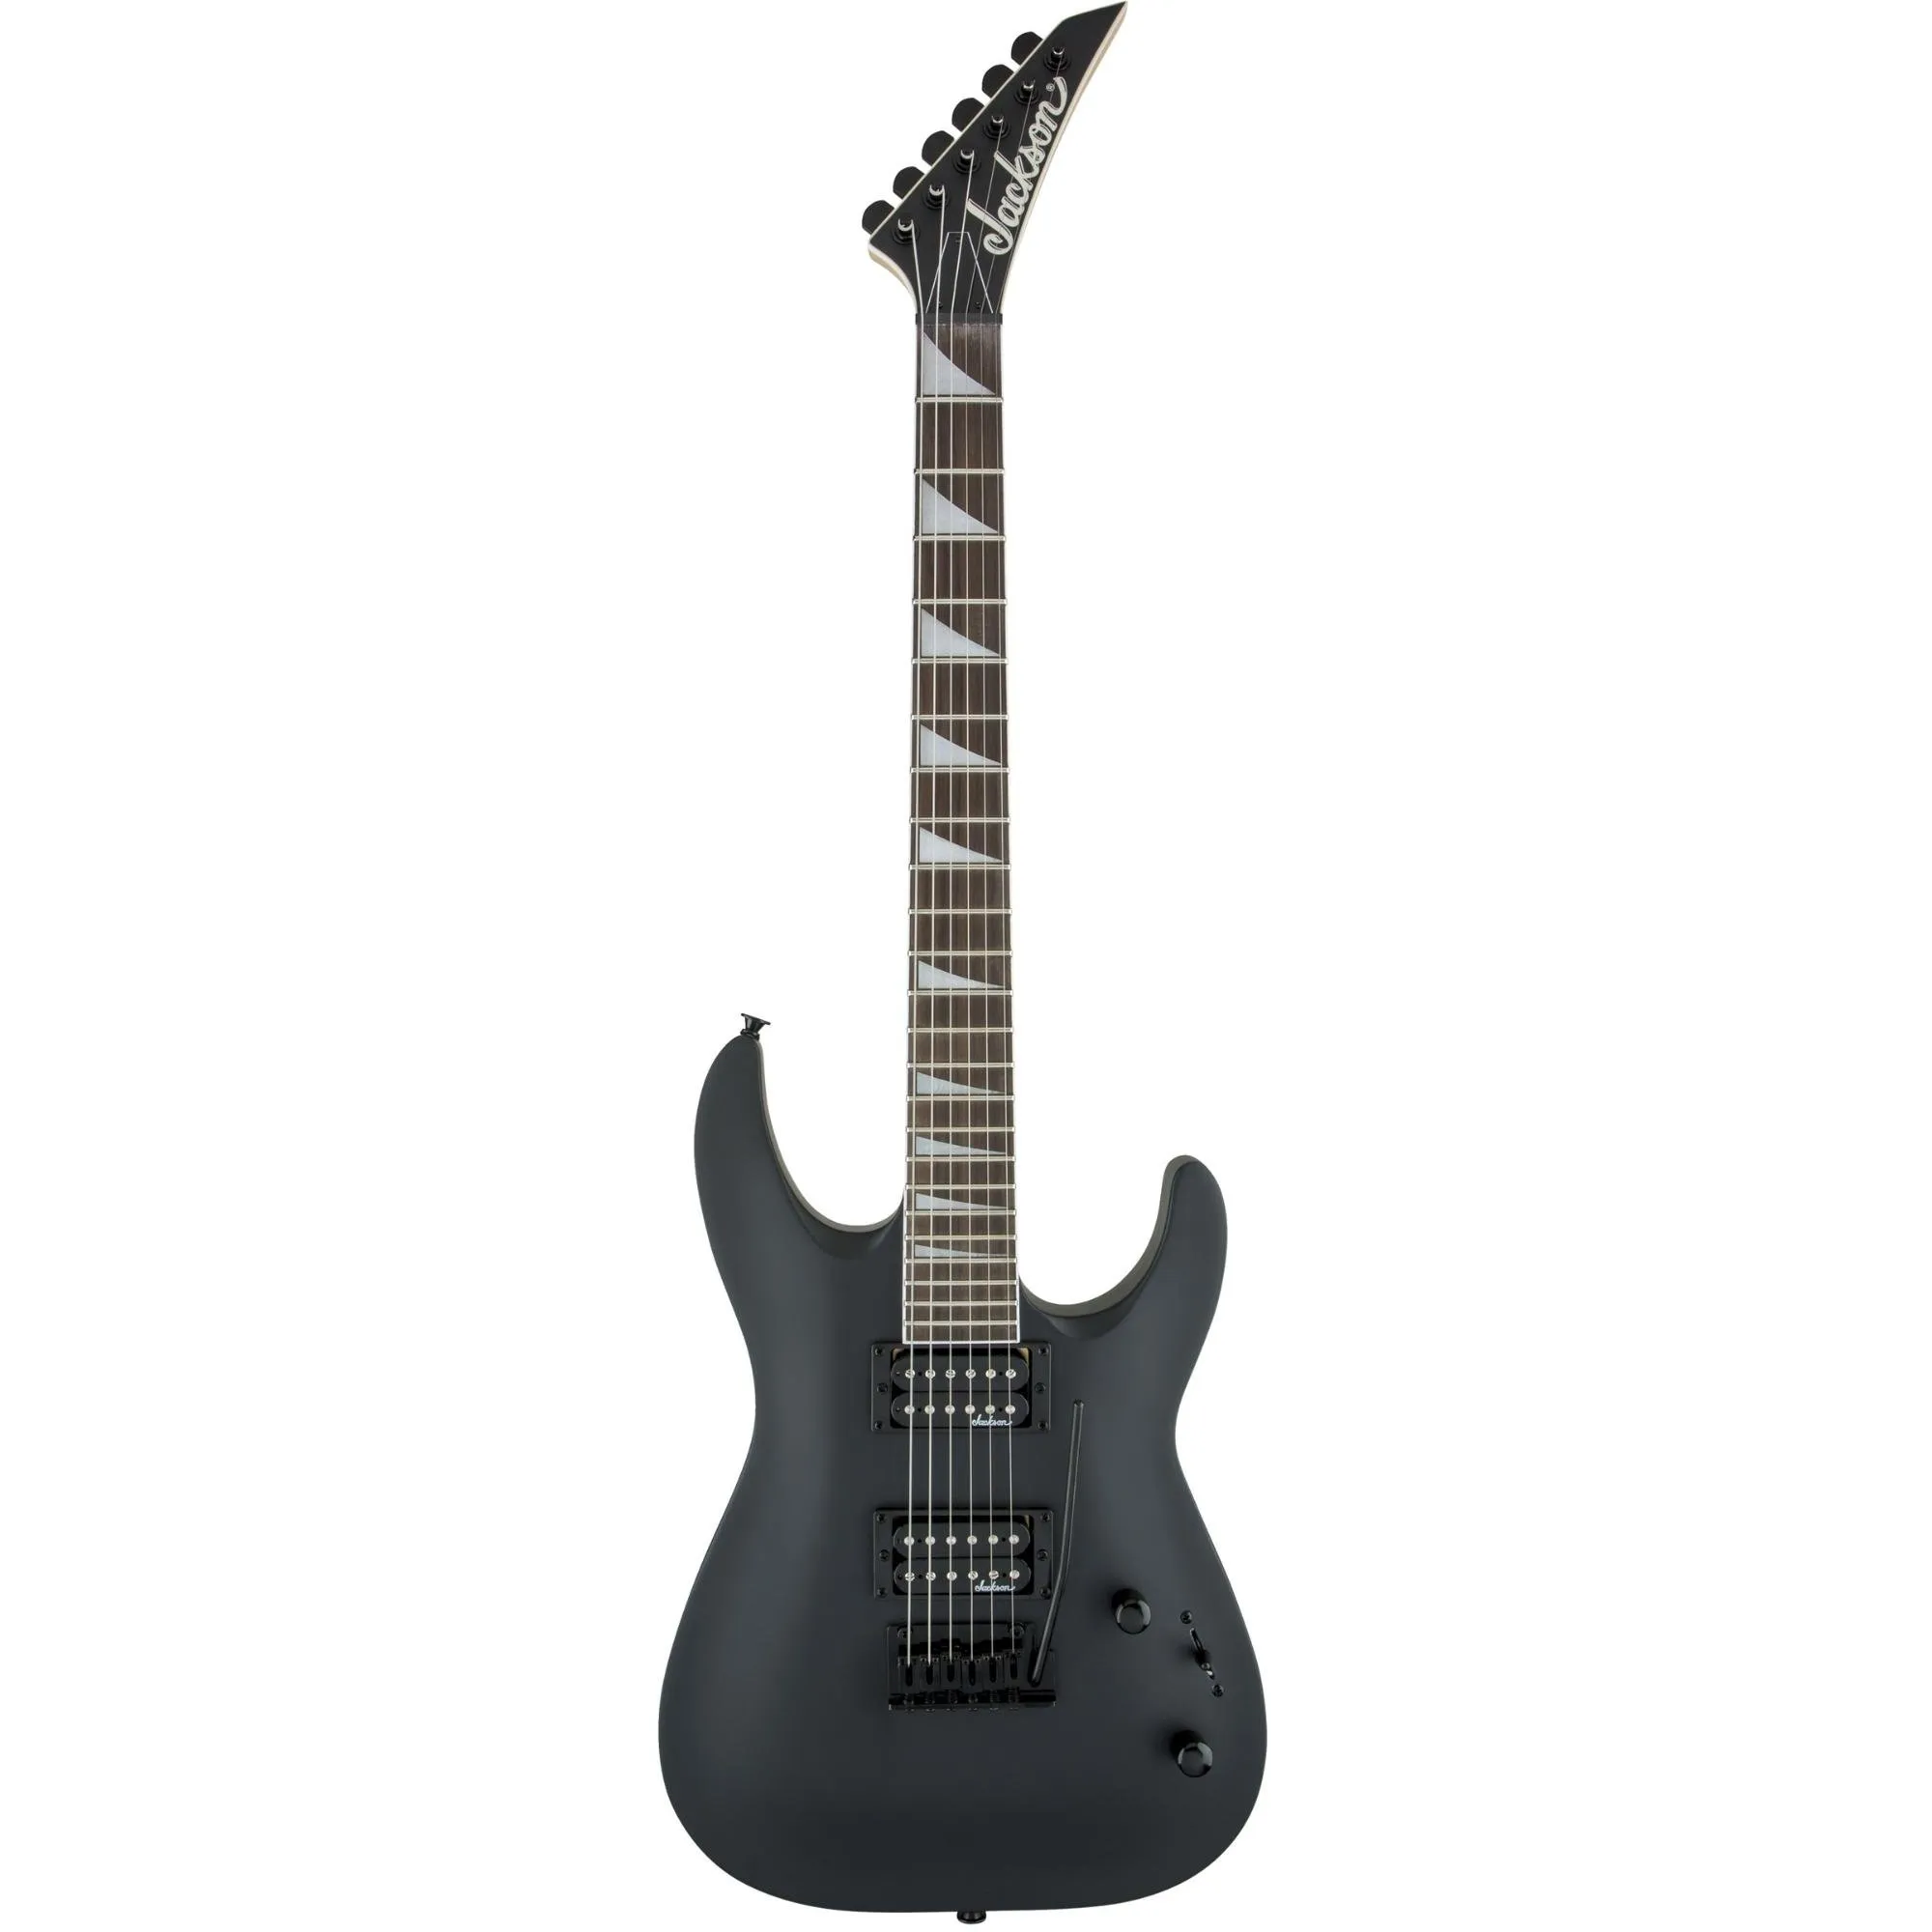 Guitarra Jackson JS Series Dinky Arch Top JS22 Satin Black por 2.399,99 à vista no boleto/pix ou parcele em até 12x sem juros. Compre na loja Mundomax!